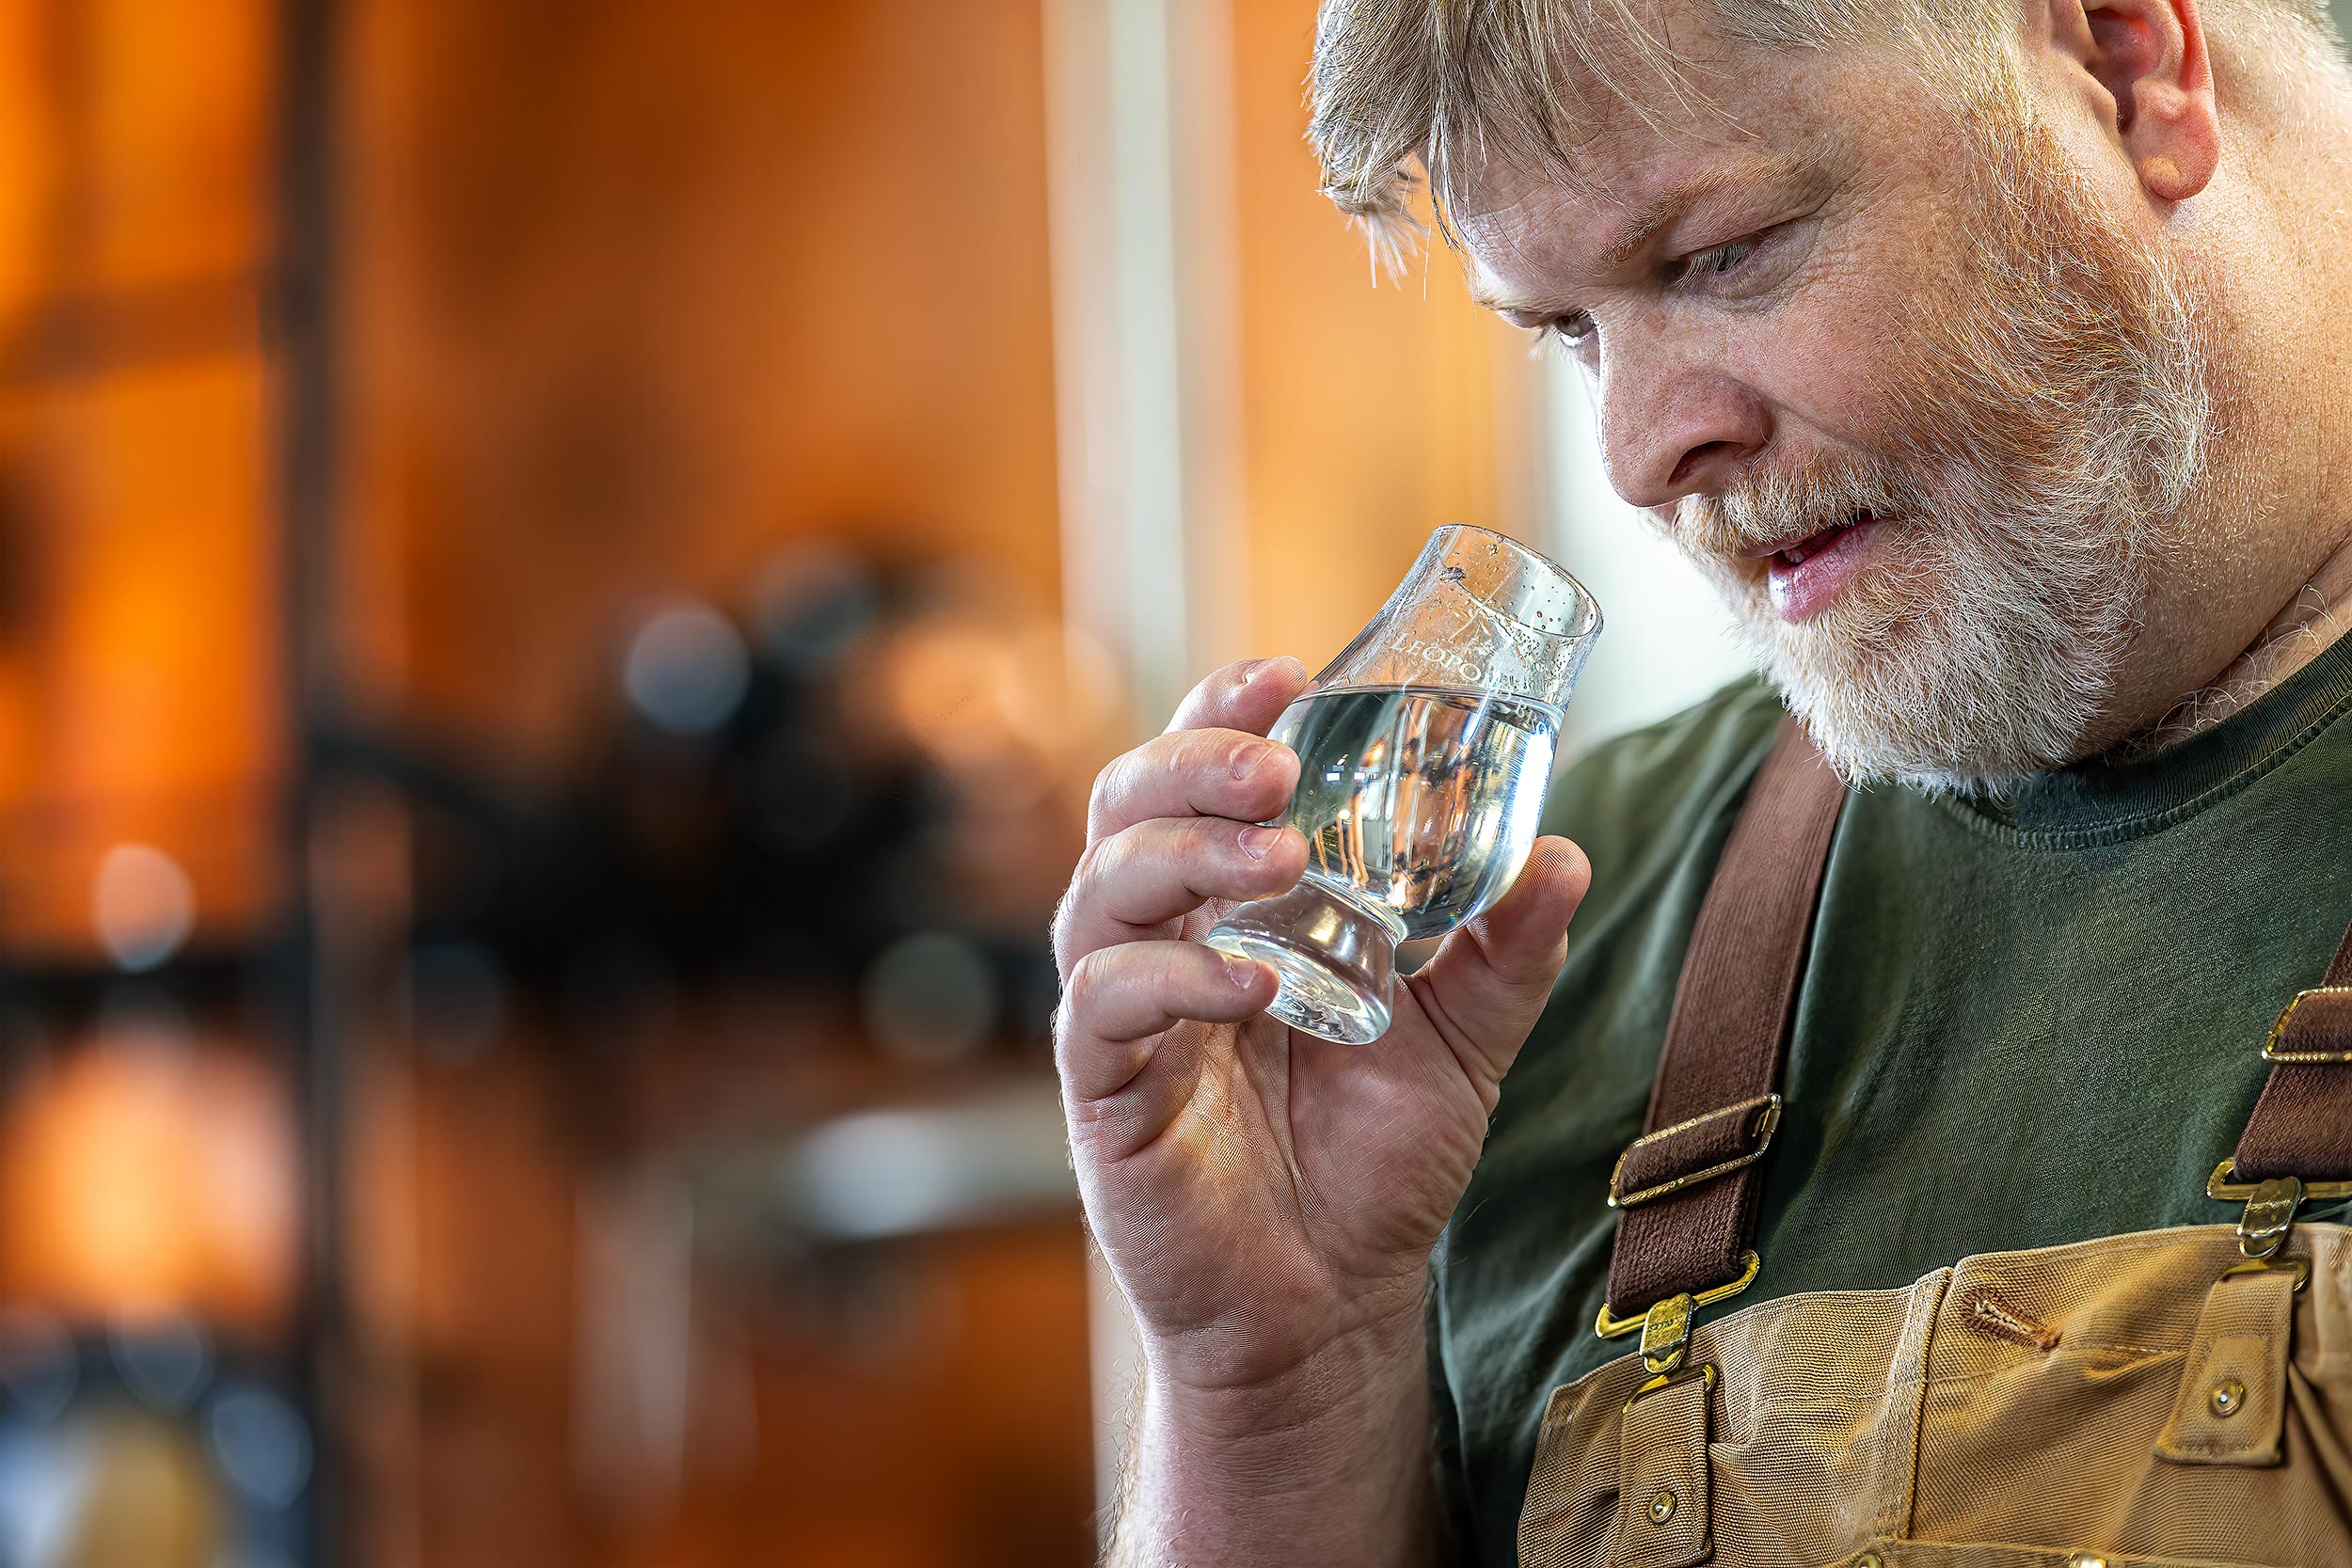 Master Distiller of Leopold Whiskey tasting whiskey for Distilled Magazine